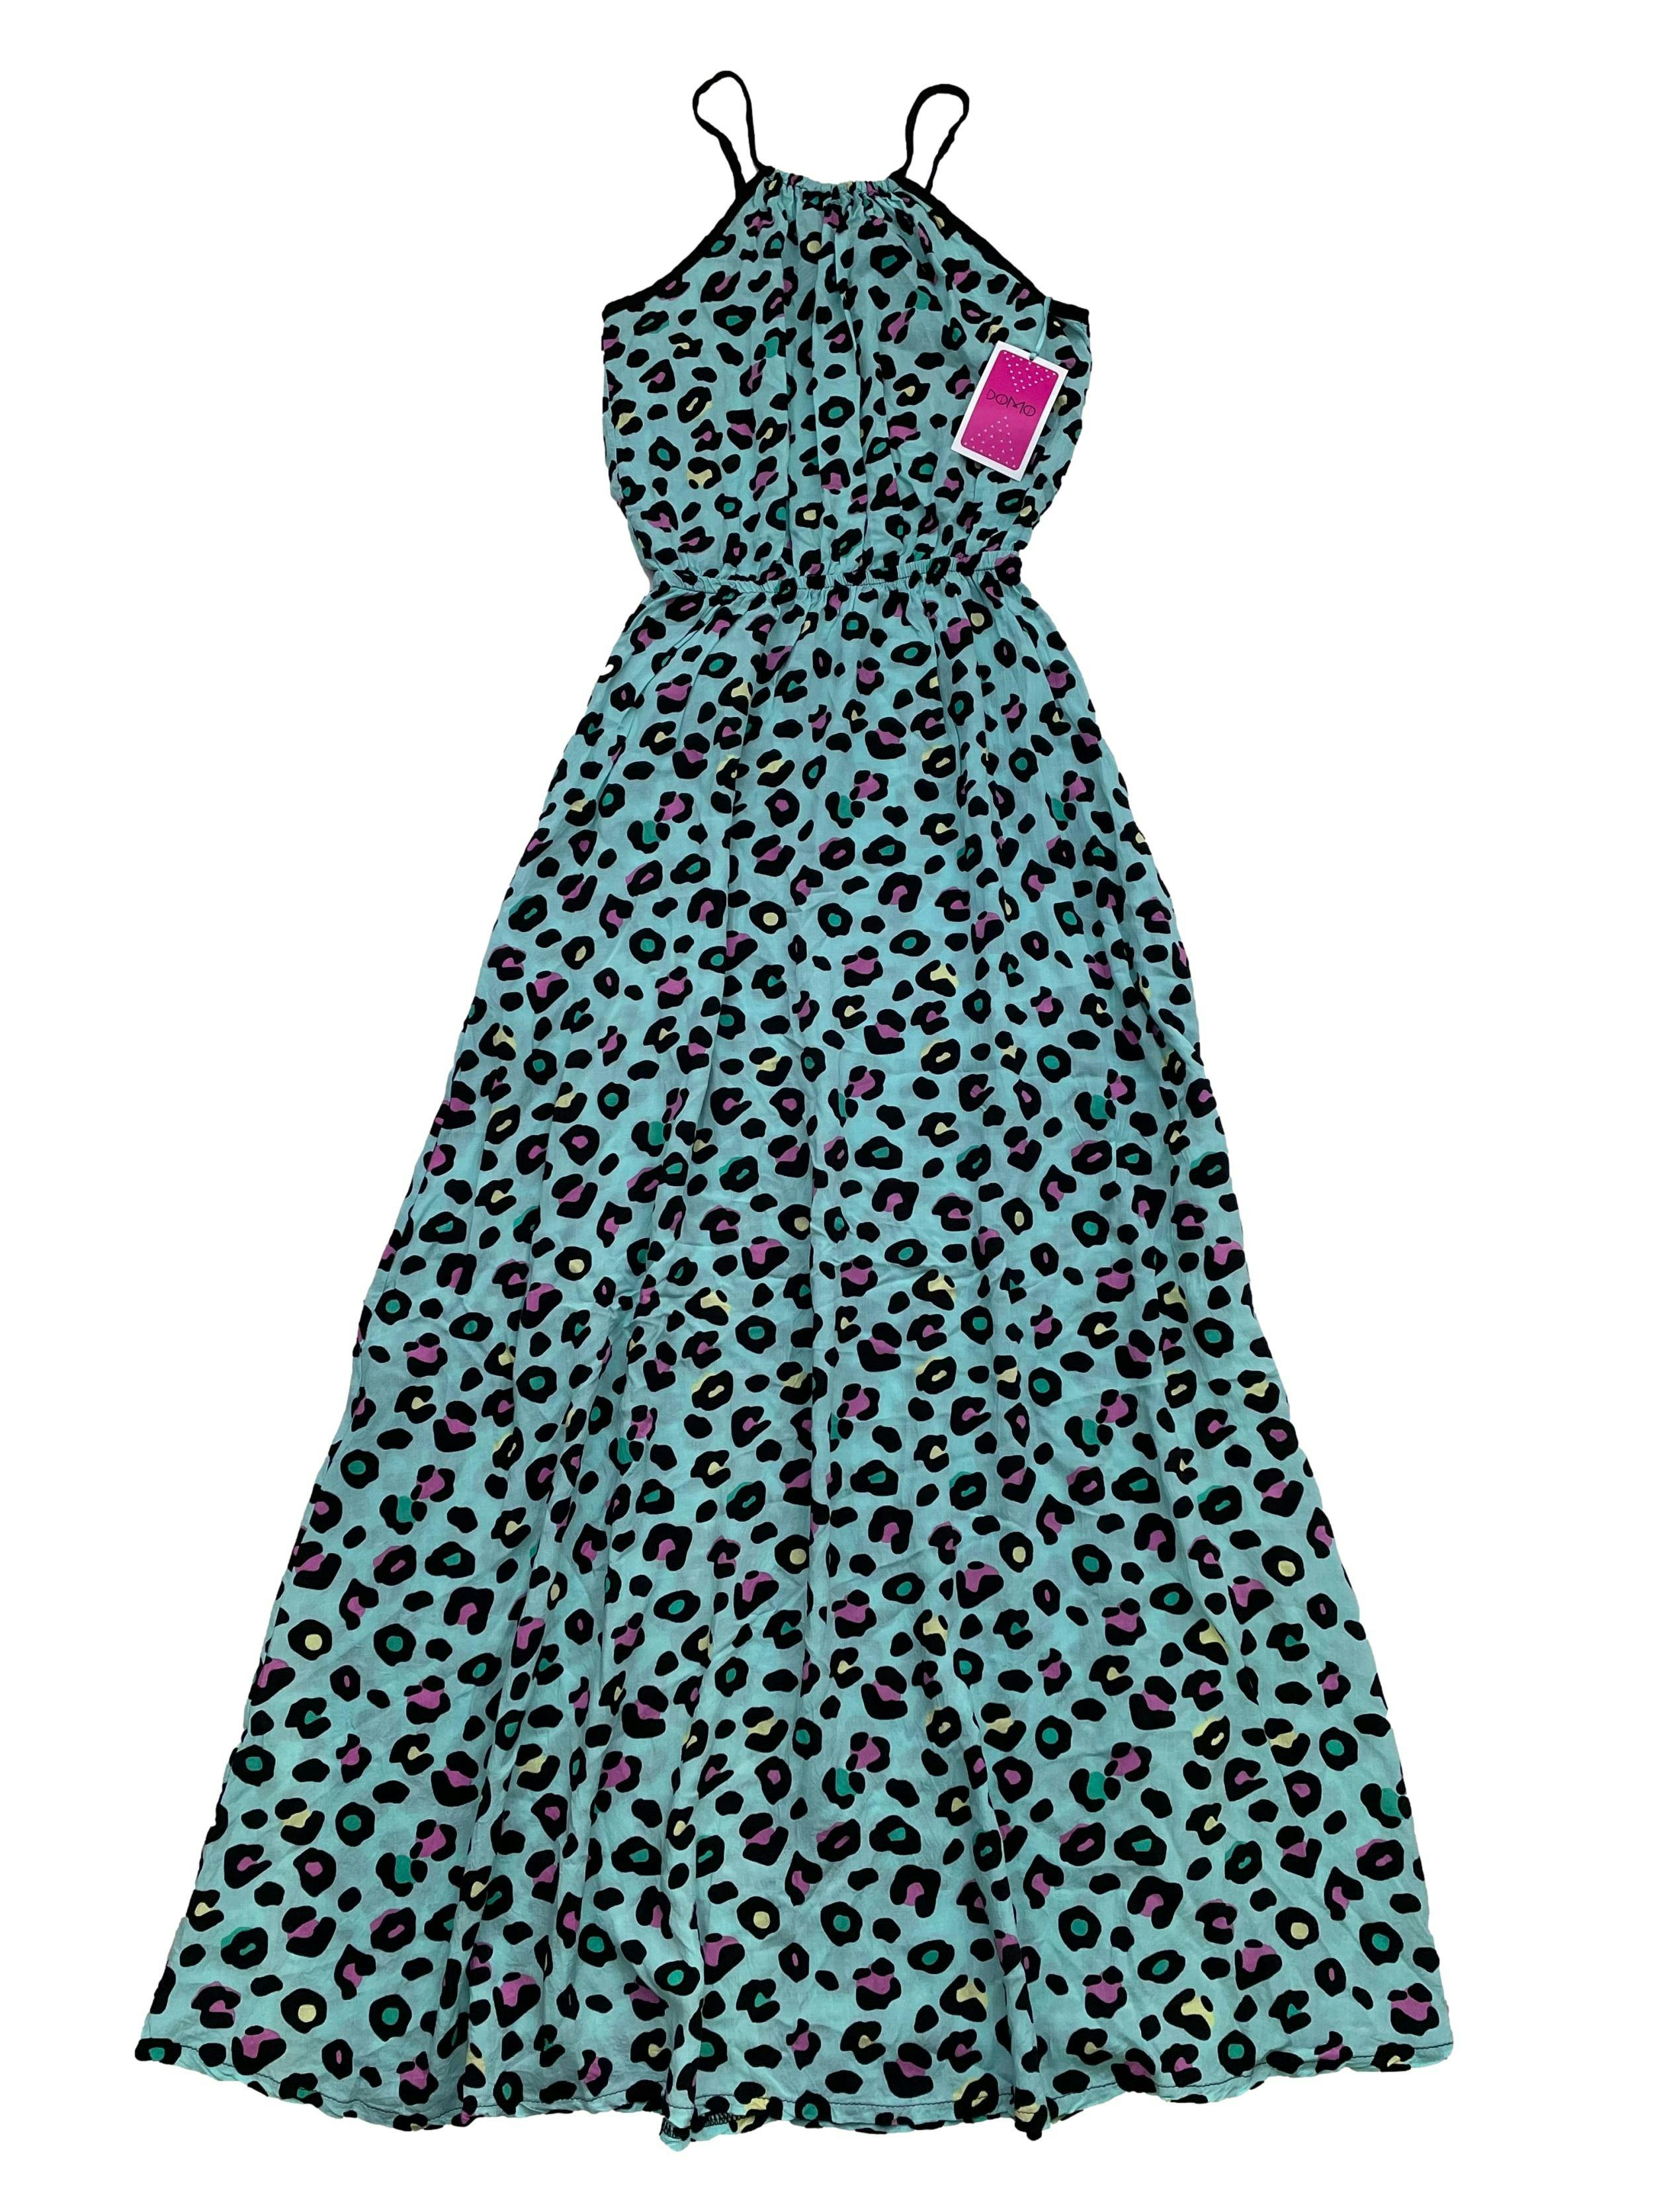 Vestido largo turquesa con estampado leopardo en colore, se amarra en la espalda, elástico en cintura y bolsillos en falda. Busto 90cm, Largo 130cm Nuevo con etiqueta.